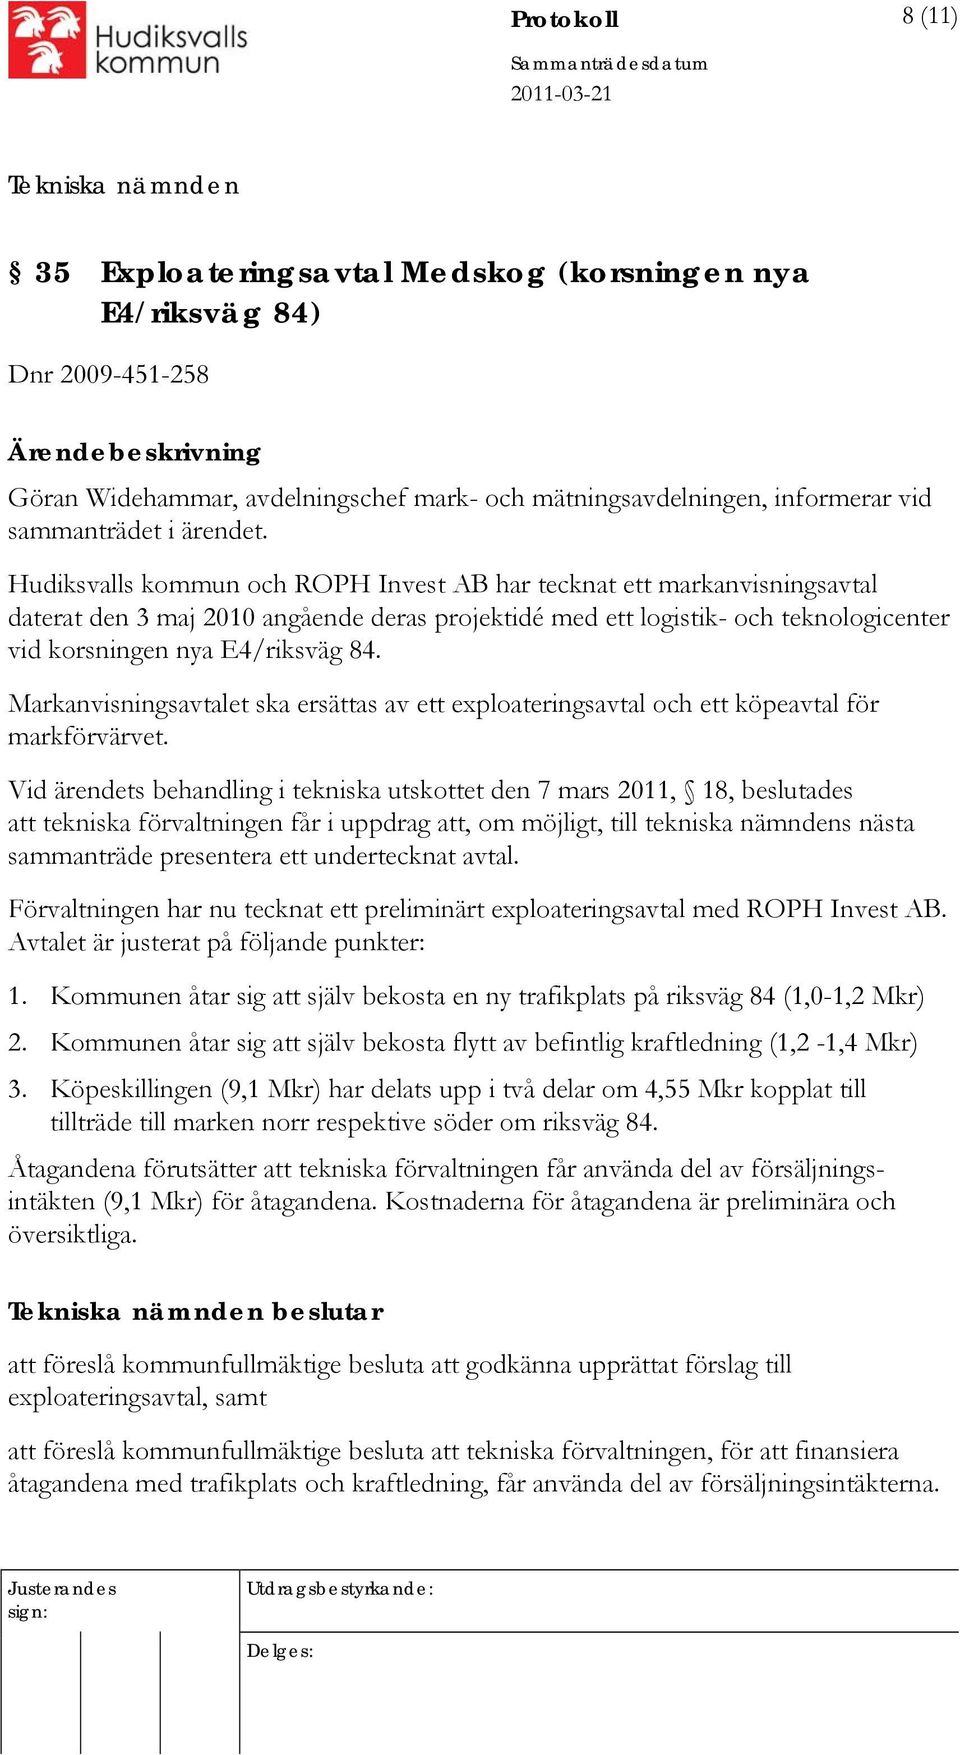 Hudiksvalls kommun och ROPH Invest AB har tecknat ett markanvisningsavtal daterat den 3 maj 2010 angående deras projektidé med ett logistik- och teknologicenter vid korsningen nya E4/riksväg 84.